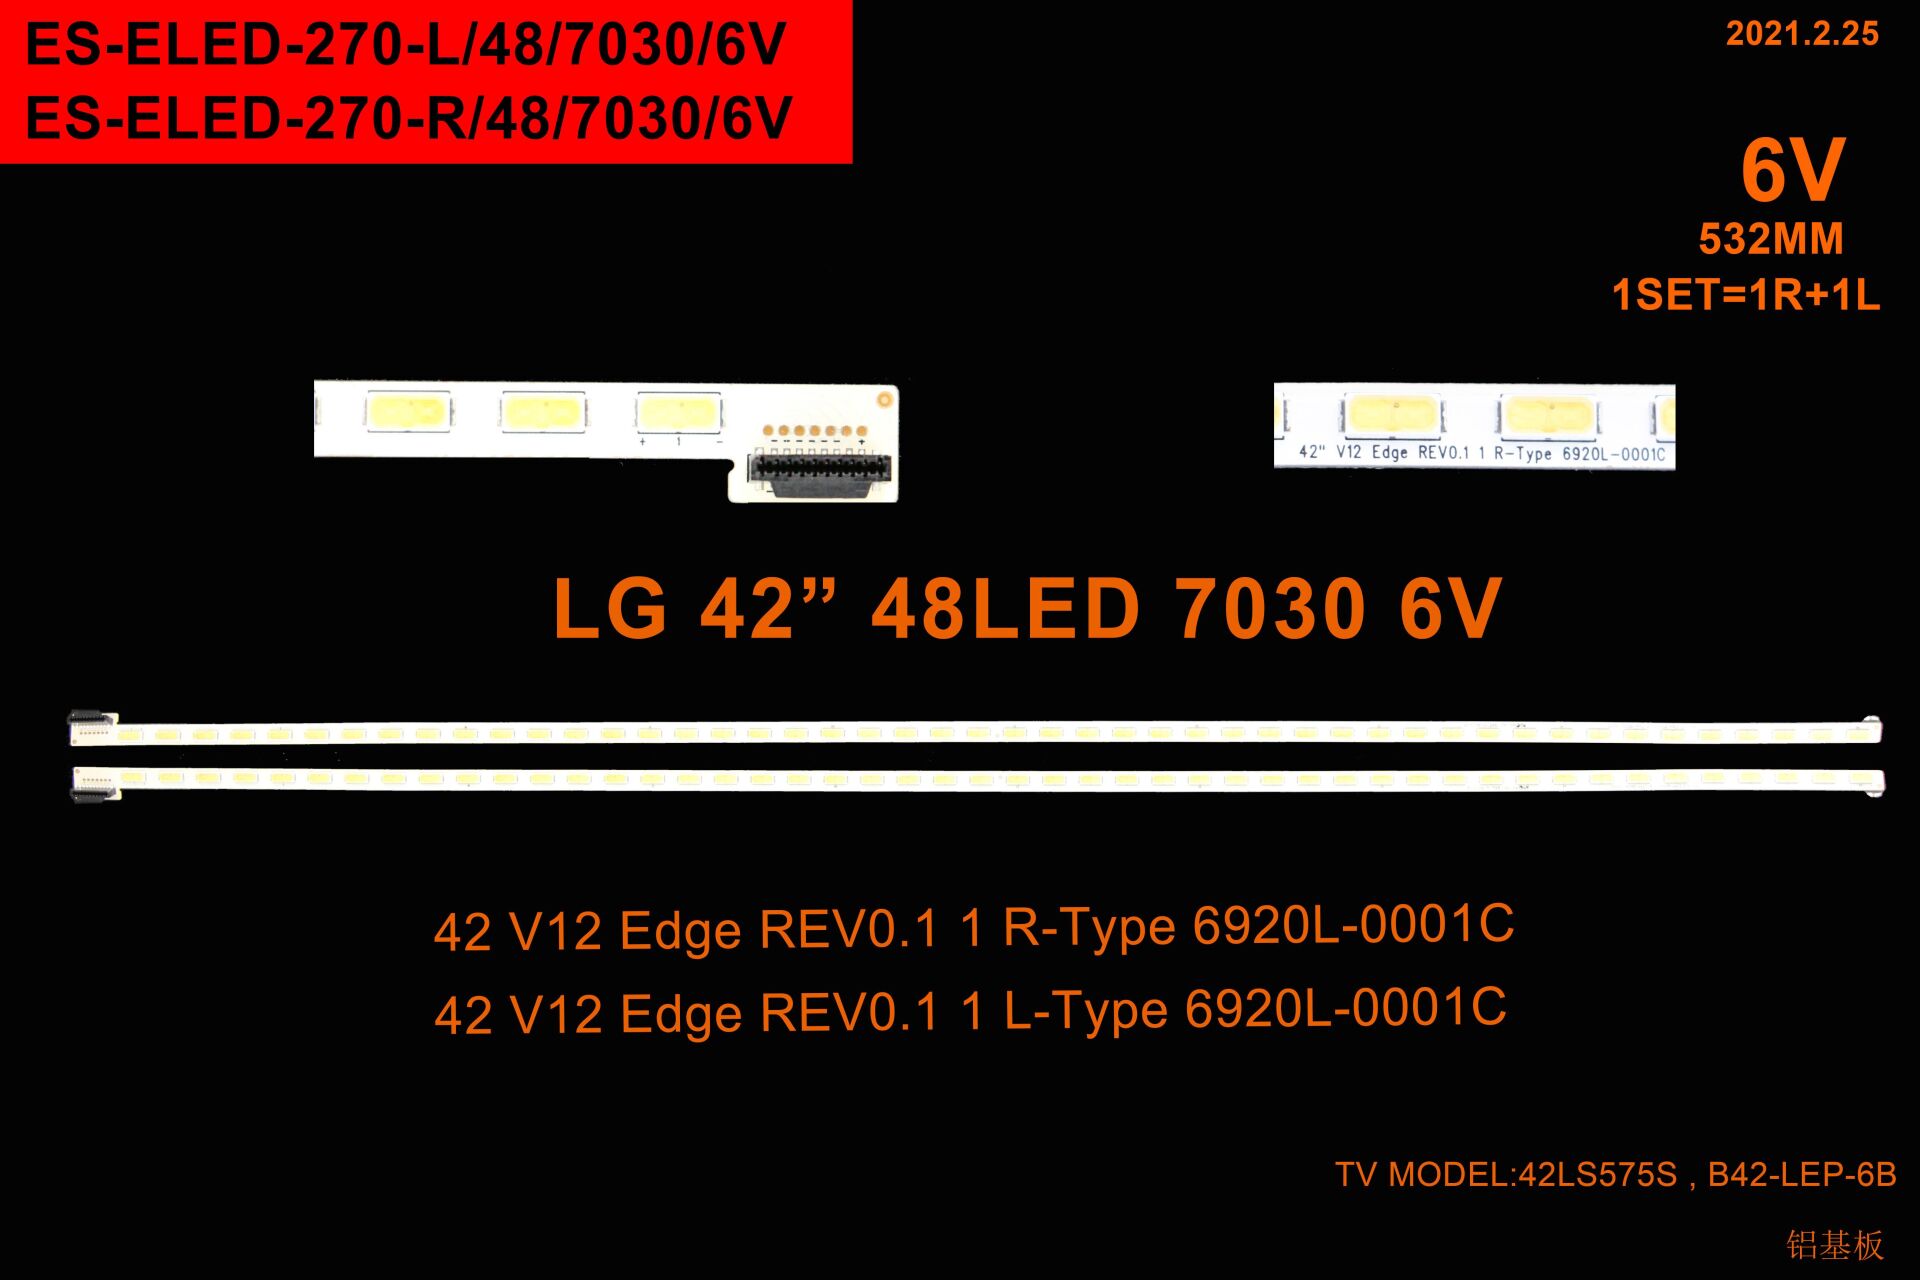 LCD LED-2366 2 Lİ ÇUBUK-42 V12 EDGE-LC420EUD-SN042DLD182--ELED270-WİNKEL